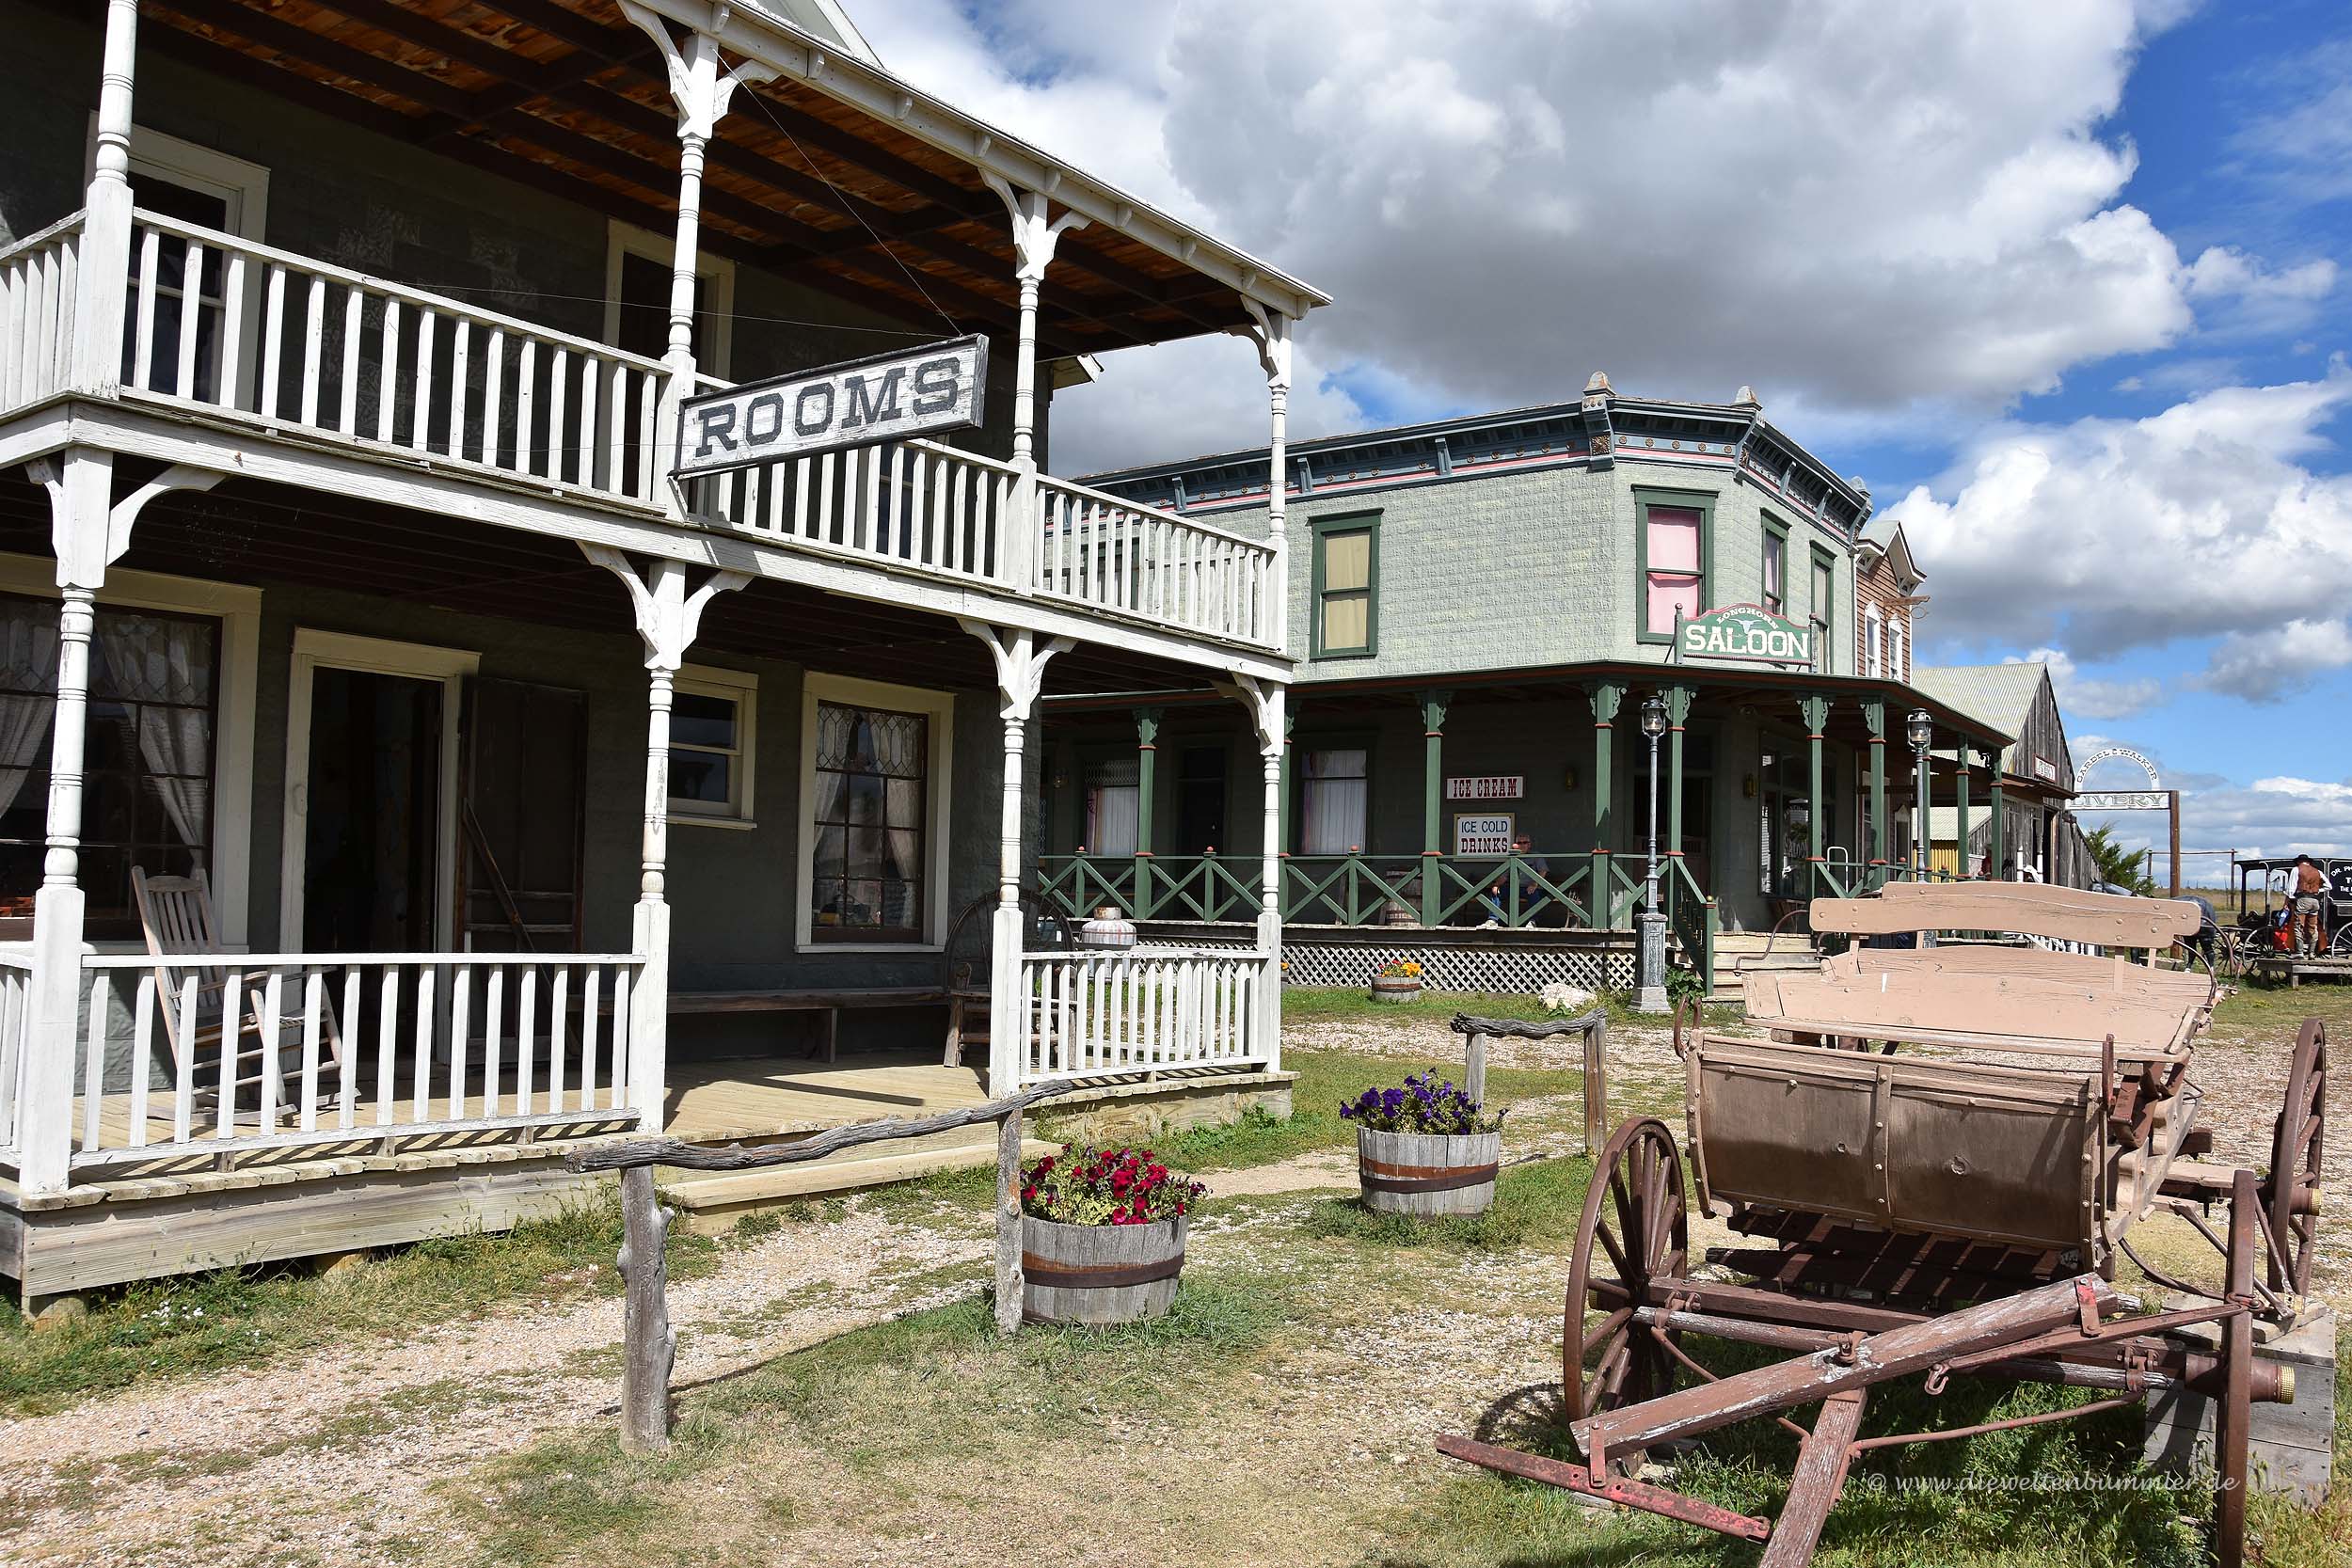 Eine echte Westernstadt - die 1880 Town in den USA | Die Weltenbummler